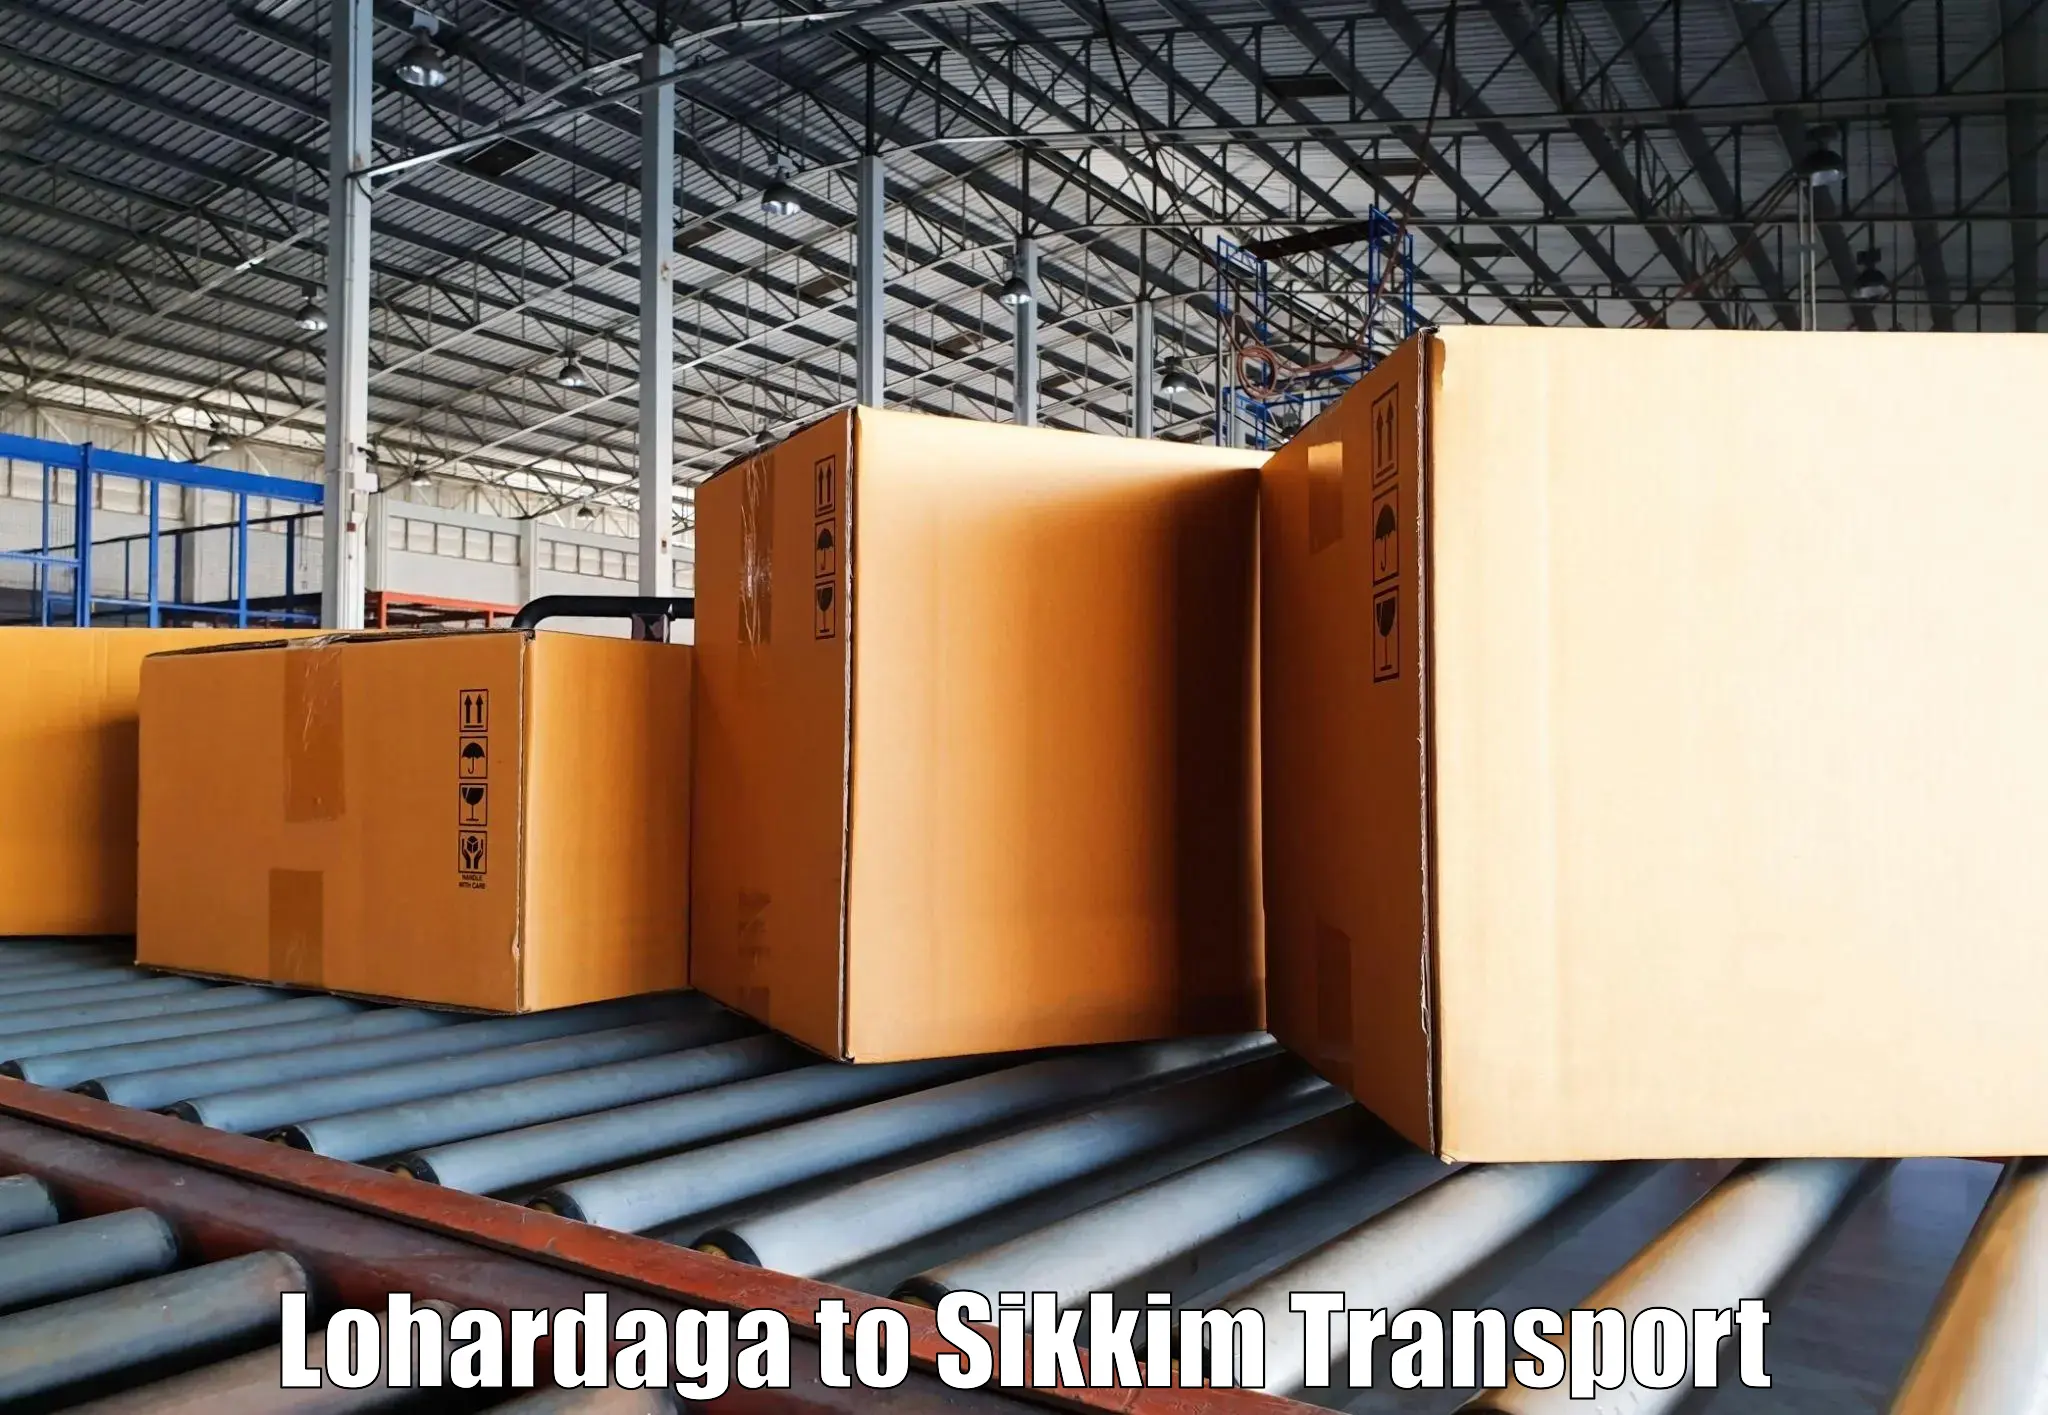 Pick up transport service Lohardaga to North Sikkim